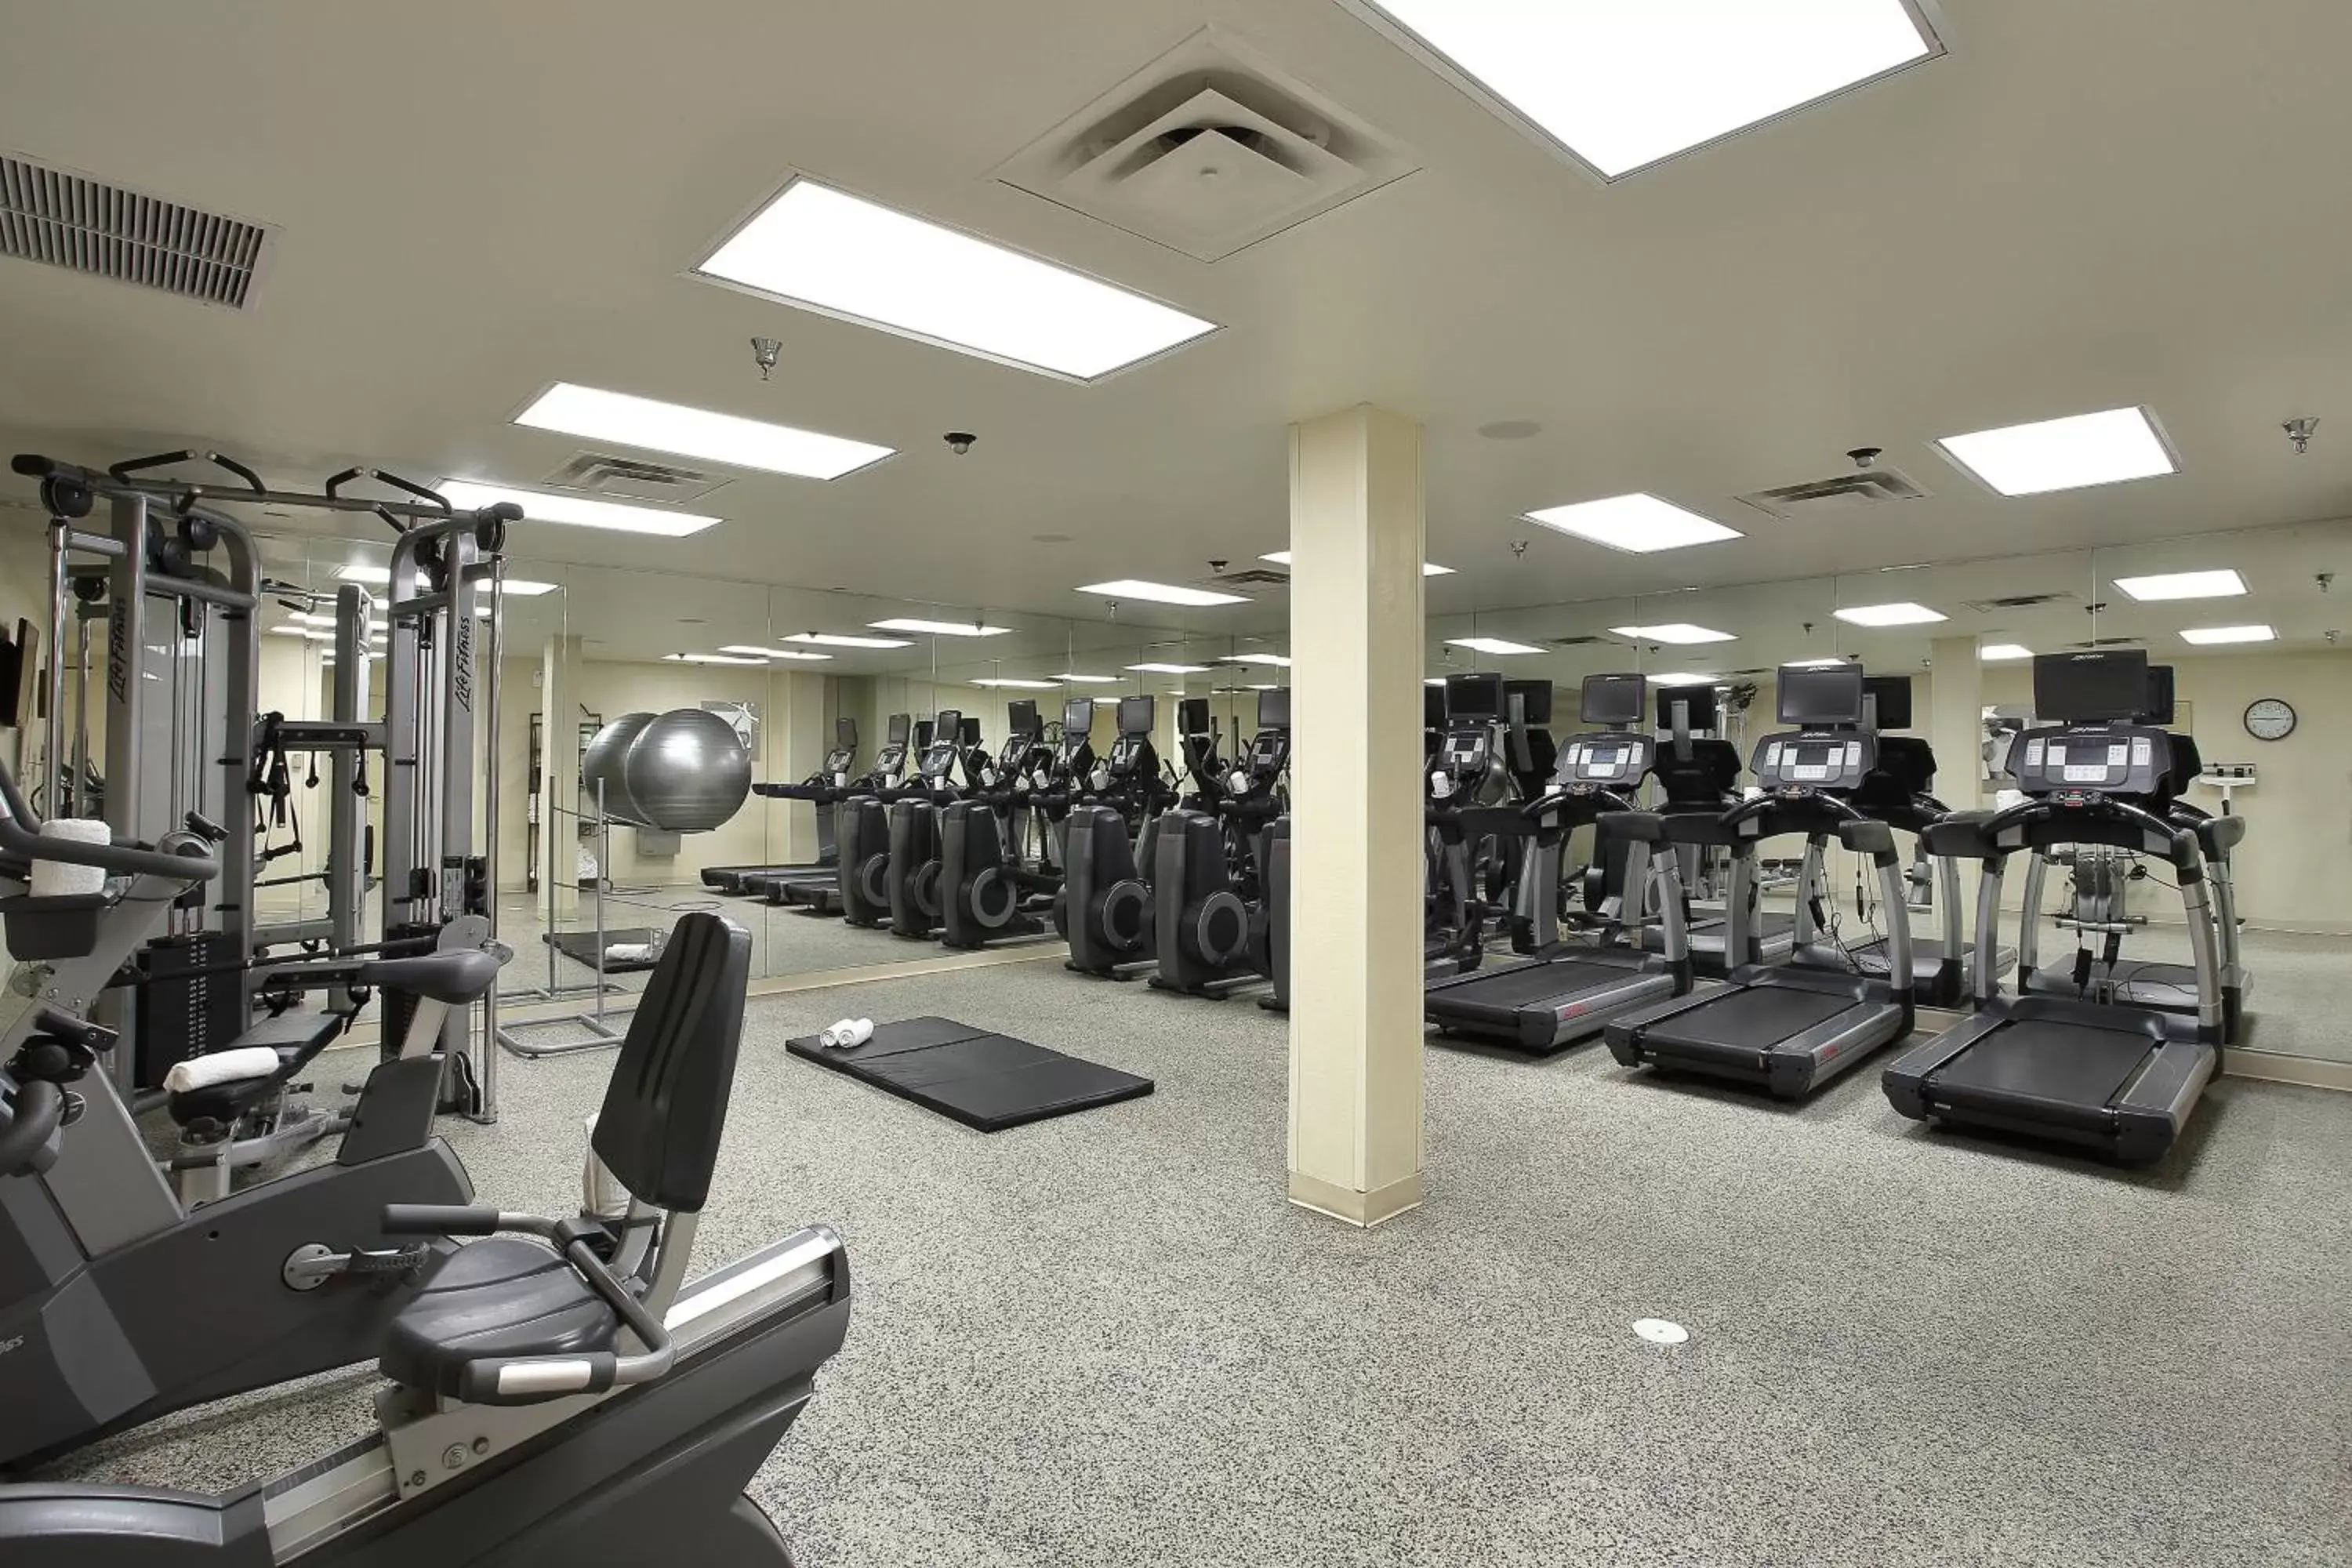 Fitness centre/facilities, Fitness Center/Facilities in Marriott El Paso